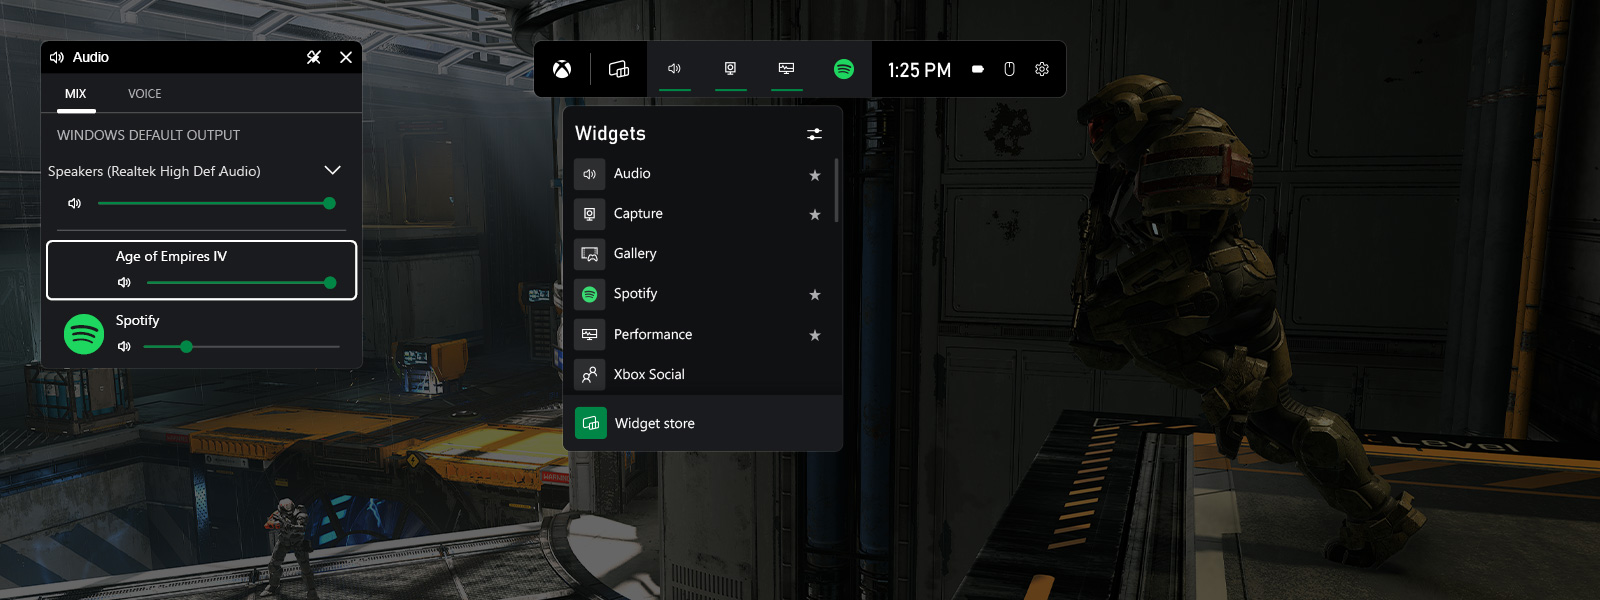 Snímka obrazovky panela Xbox zobrazujúca predvolené miniaplikácie a nastavenia zvuku